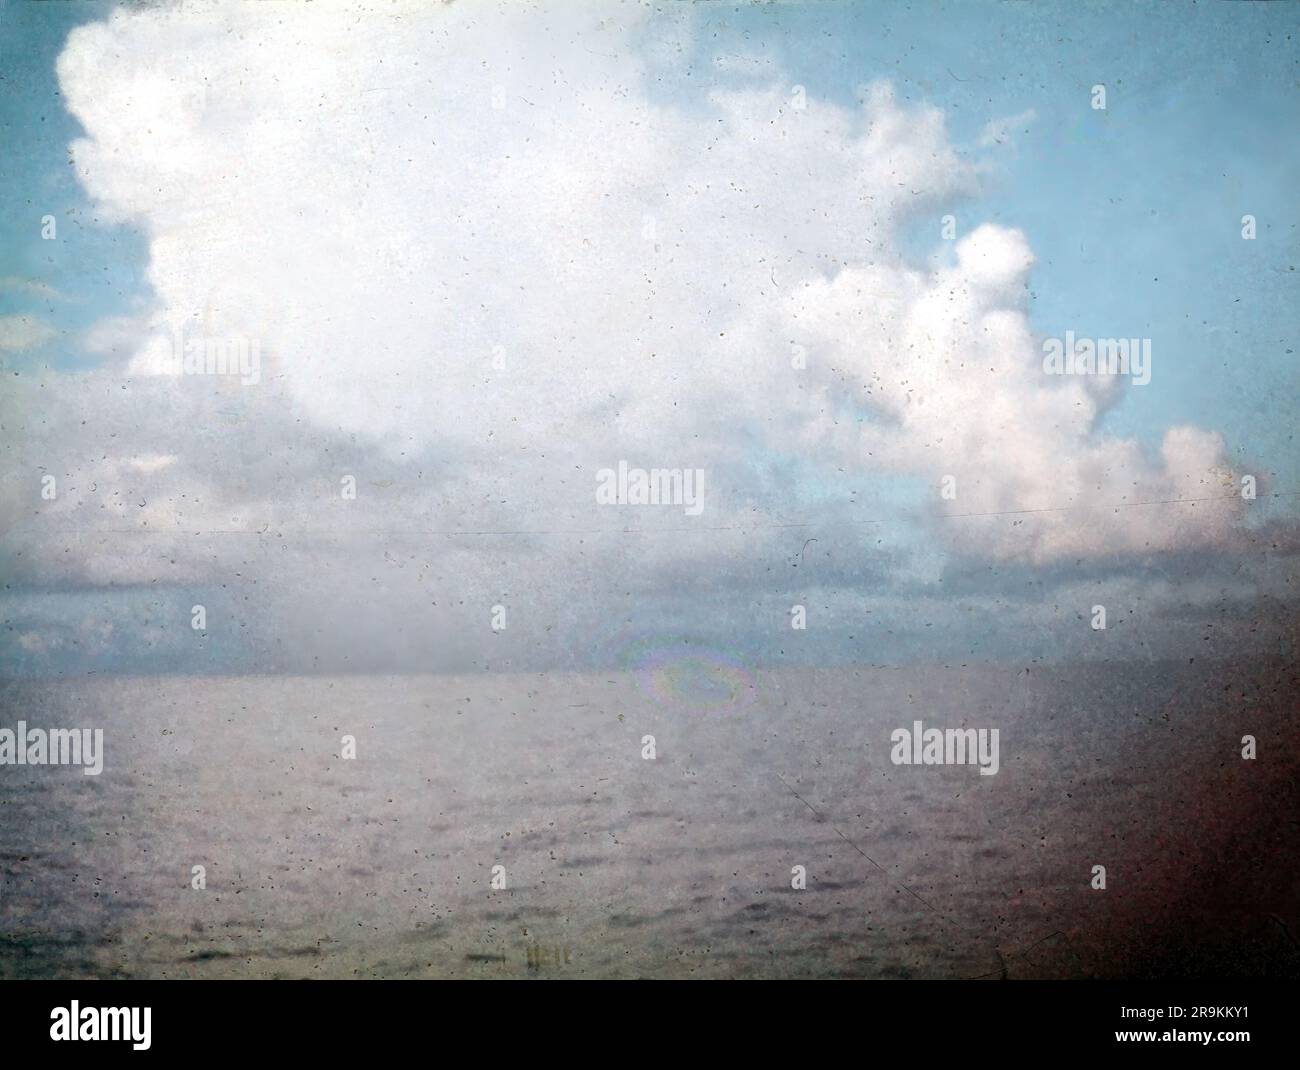 Klassische 8 mm 1950er Dia-Folie eines ruhigen Meeres mit flauschigen weißen Wolken, Staub und Kratzern Stockfoto